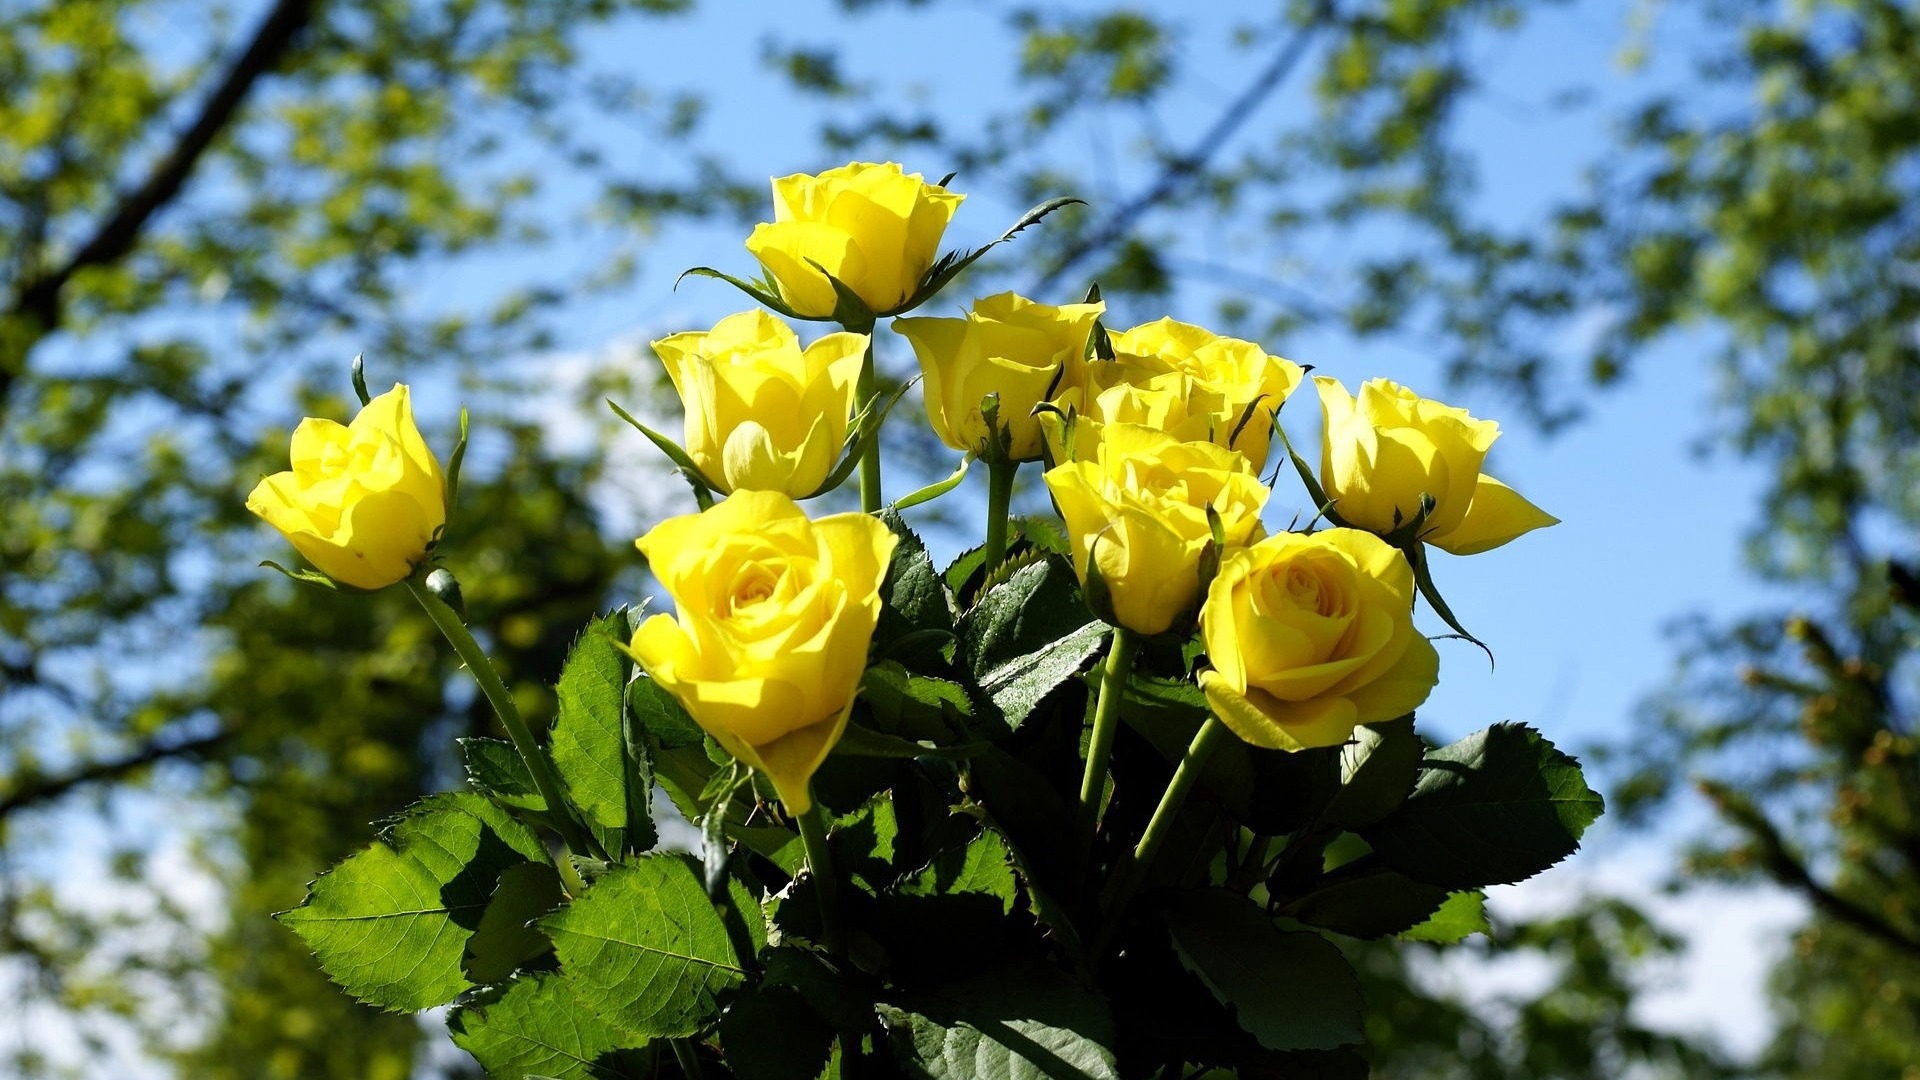 Обои цветы розы желтый букет - бесплатные картинки на Fonwall